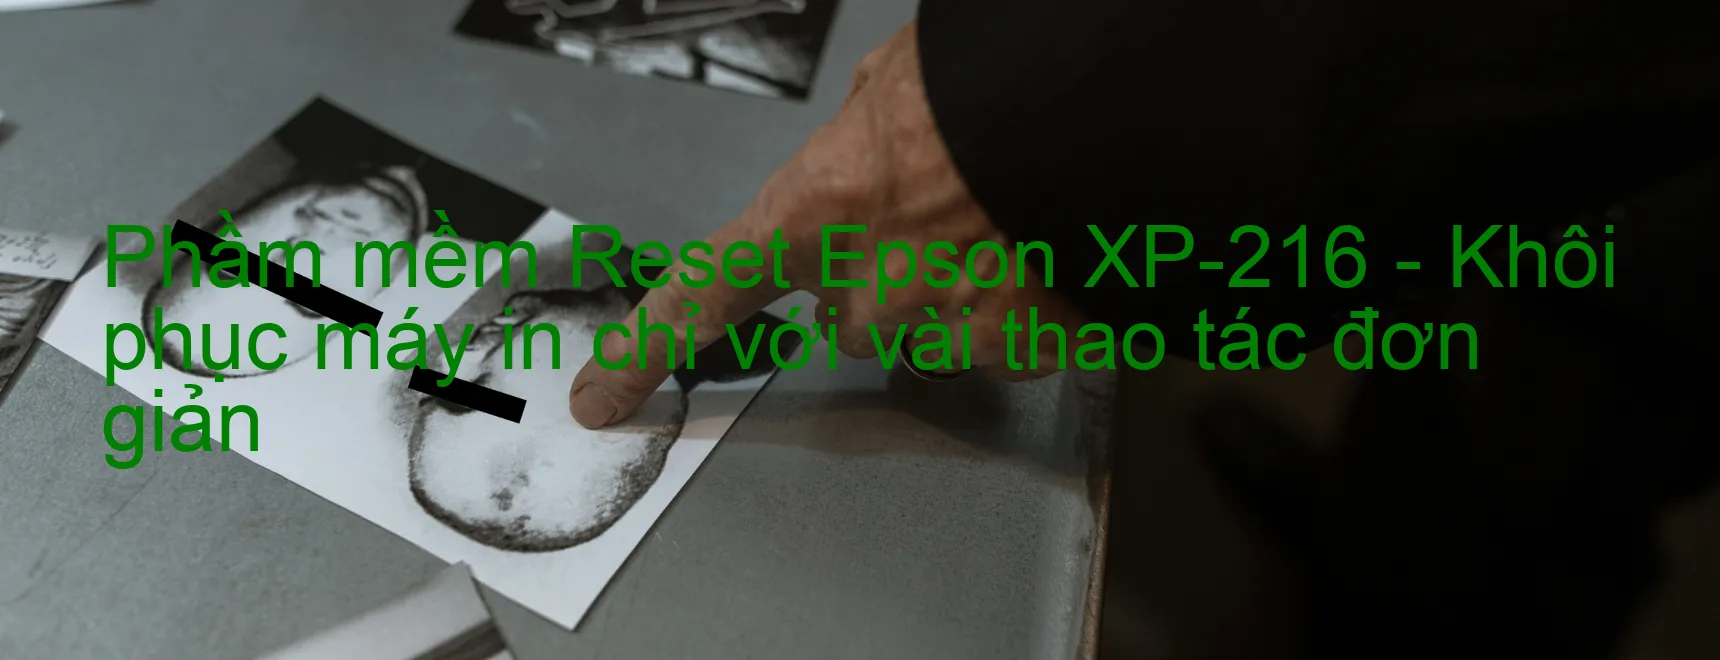 Phầm mềm Reset Epson XP-216 - Khôi phục máy in chỉ với vài thao tác đơn giản